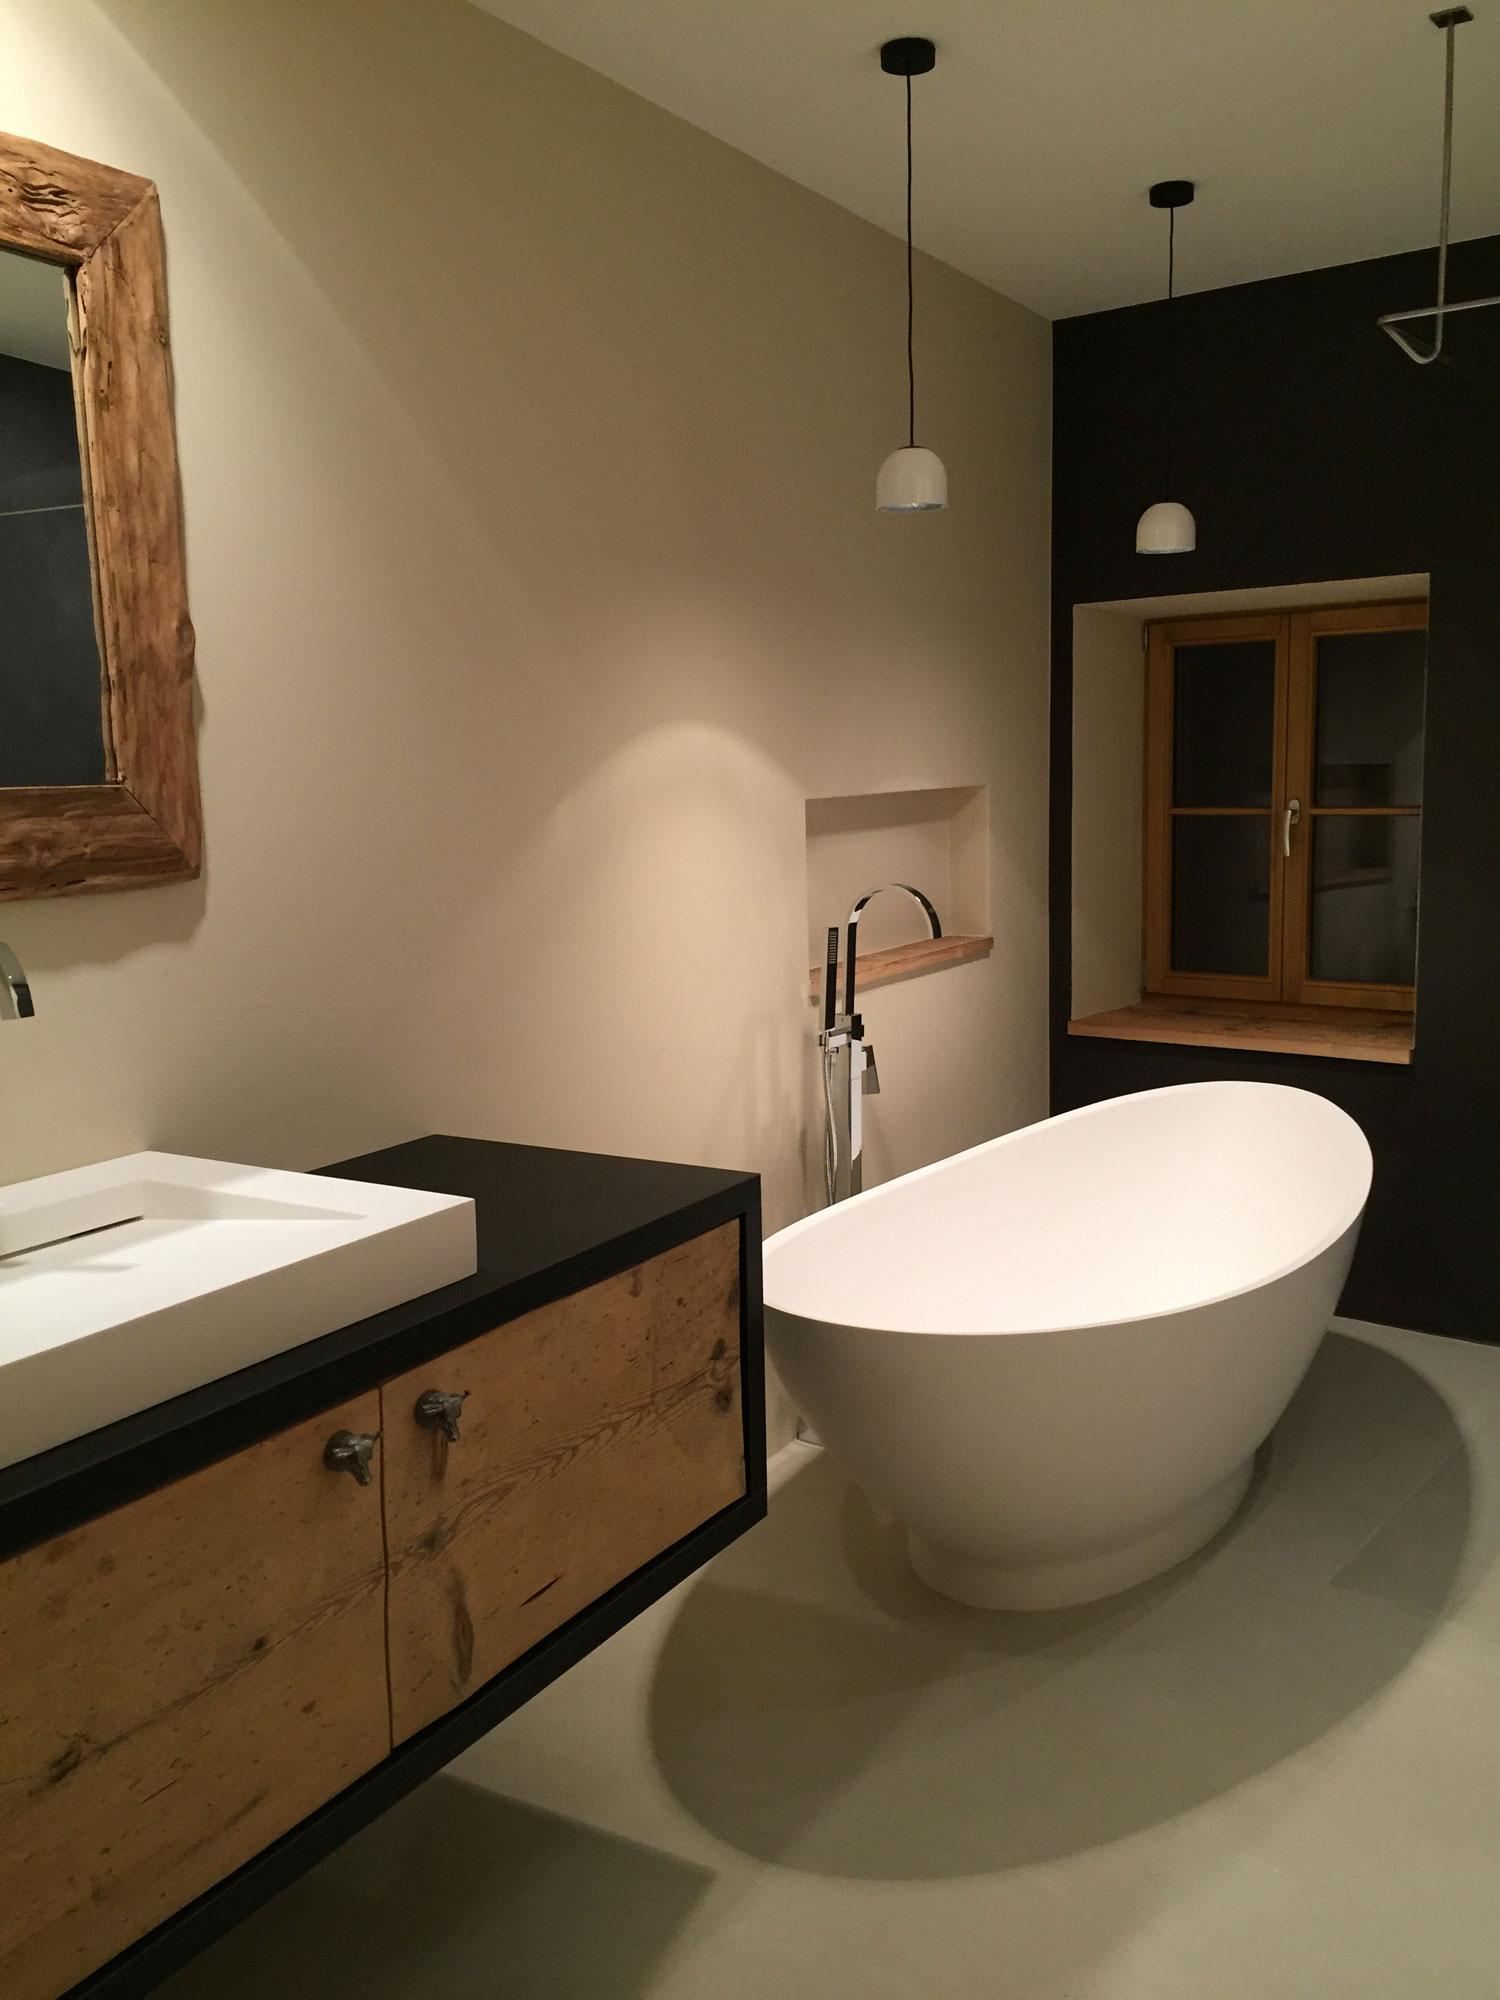 Badezimmer mit der freistehenden Badewanne Como #badezimmer #freistehendebadewanne #badidee ©Maxxwell AG / Bädermax